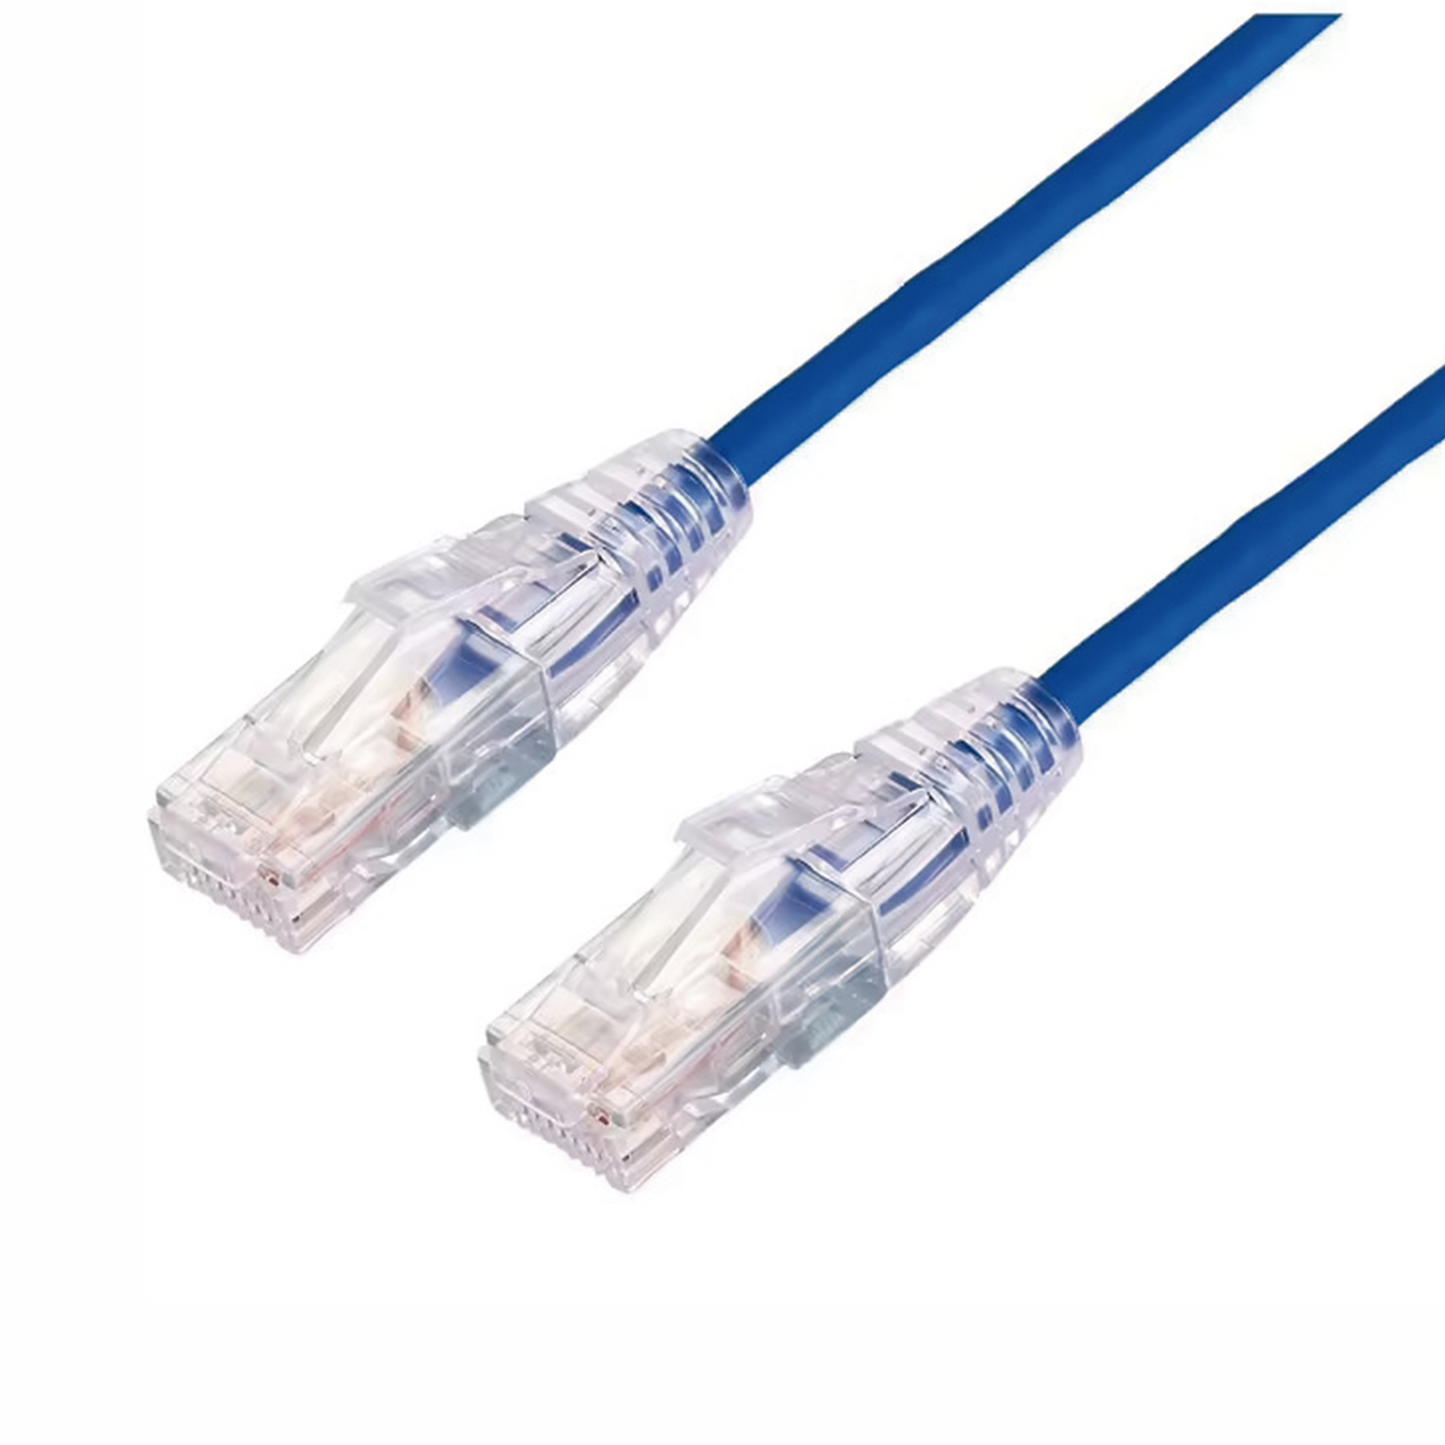 Cable de Parcheo Slim UTP Cat6A - 2 m Azul, DiÃ¡metro Reducido (28 AWG)